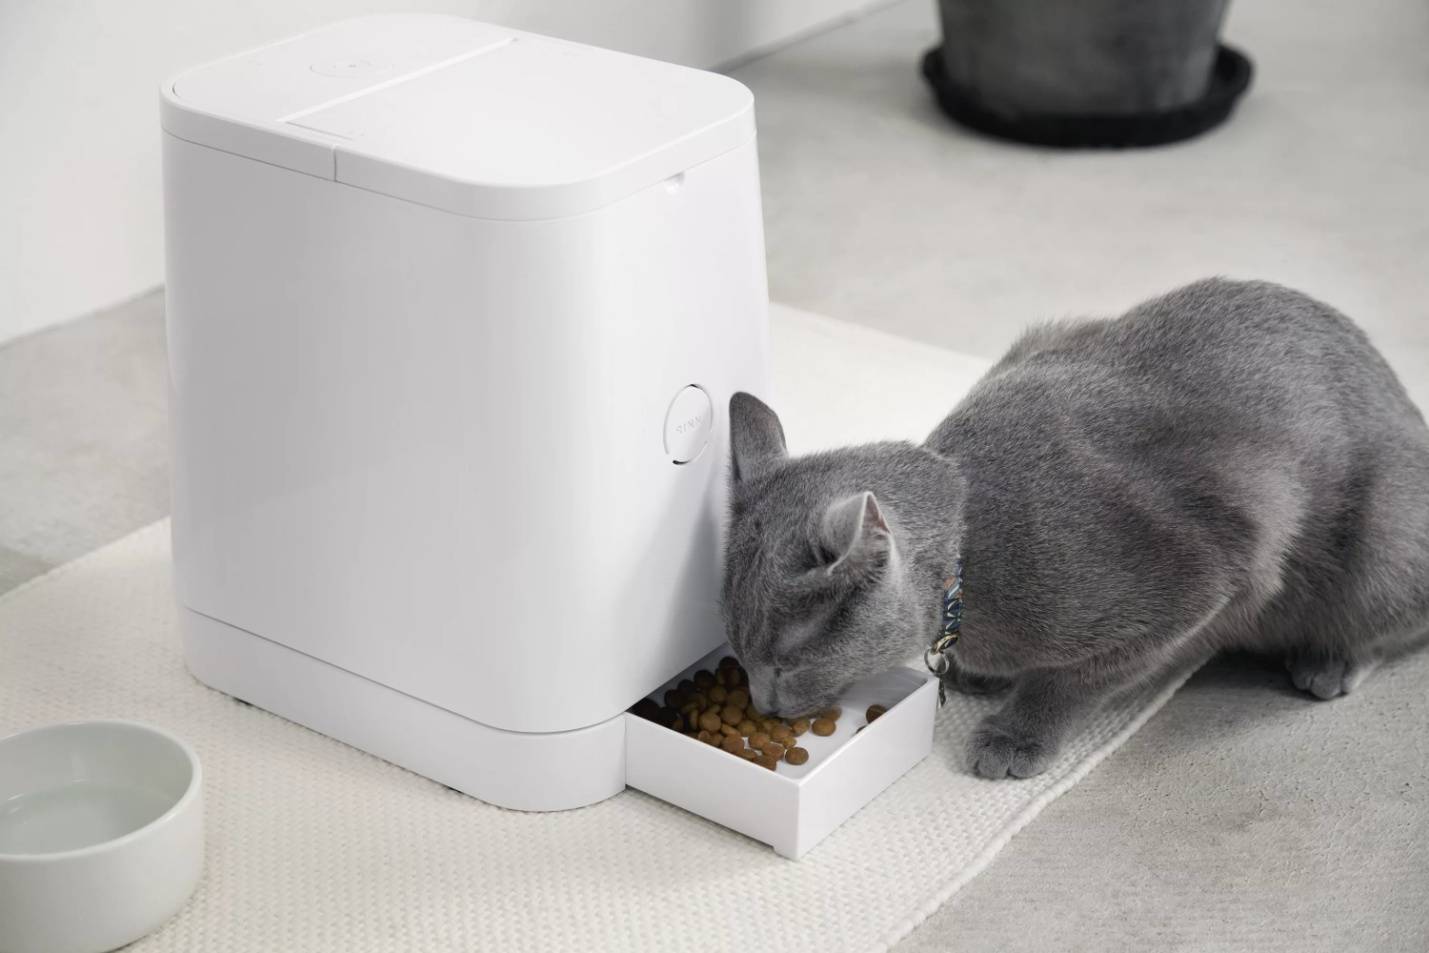 Автоматическая кормушка для кошек: особенности электронных автокормушек для котов, кормушек с таймером, с дозатором и других моделей